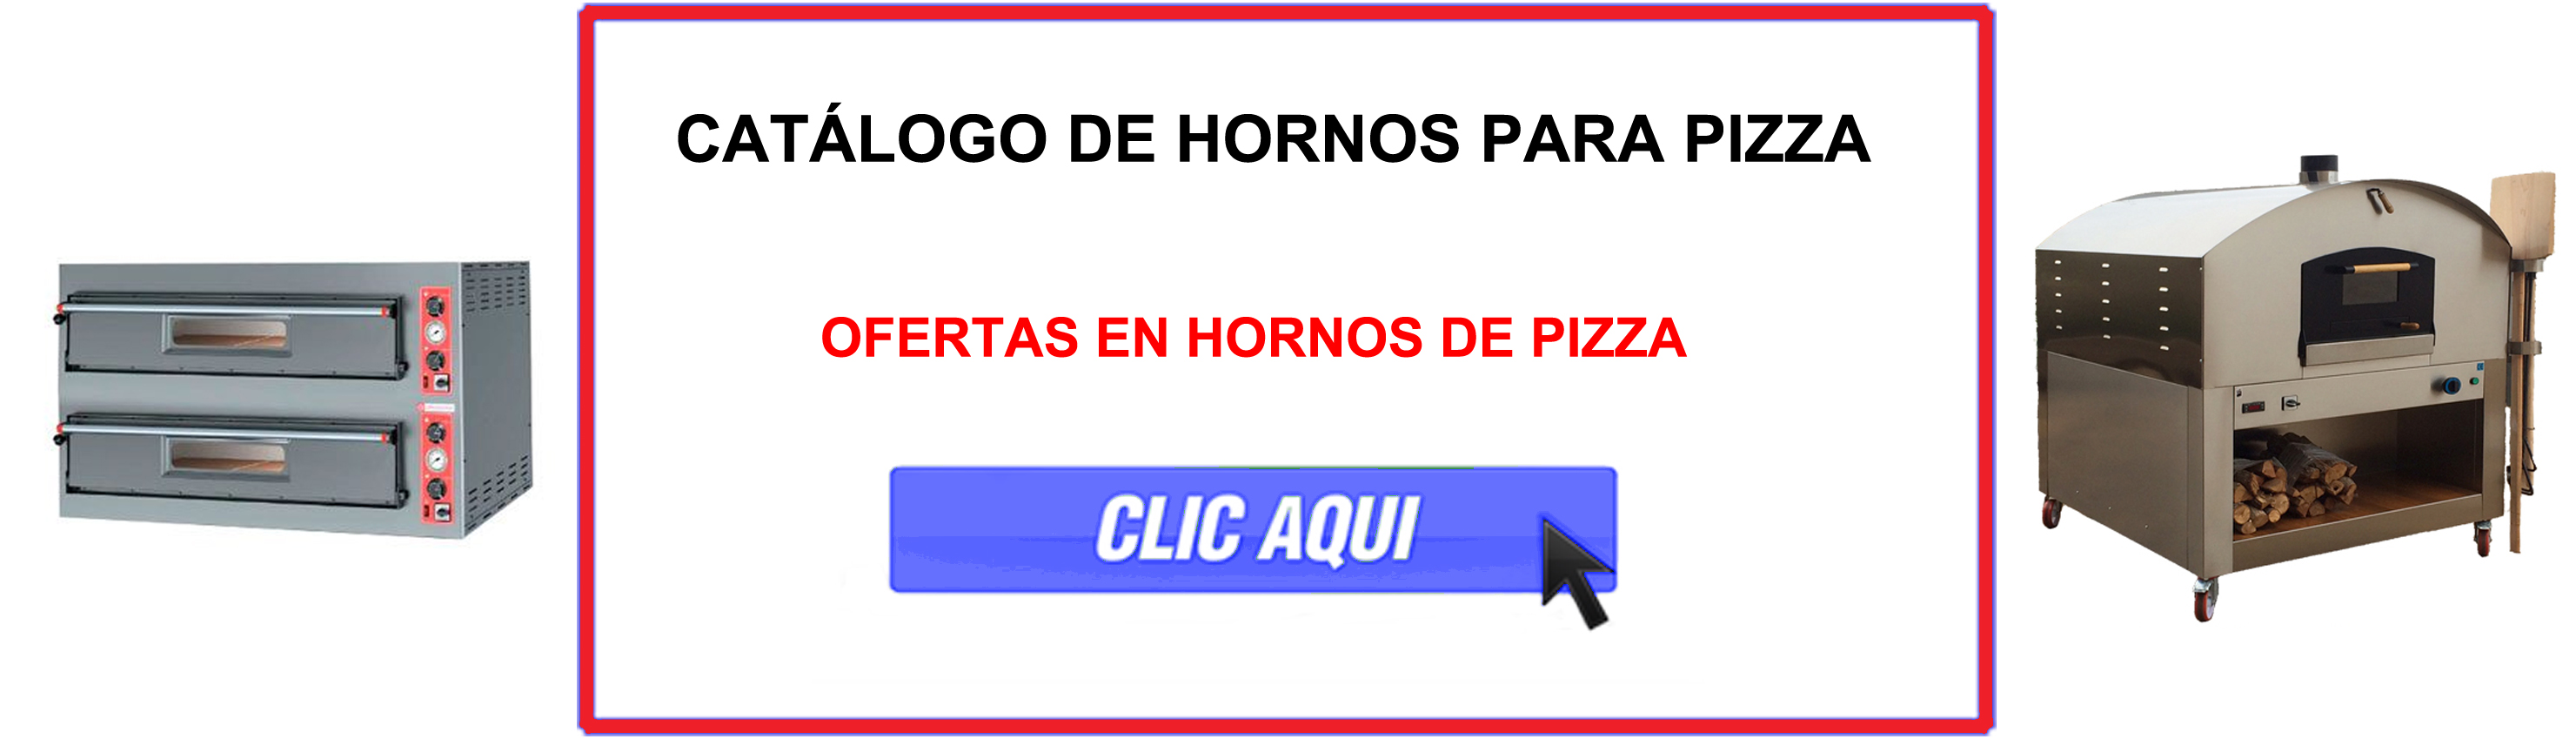 Horno para pizza ¿Como funciona? - Blog hosteleria - Secretos de